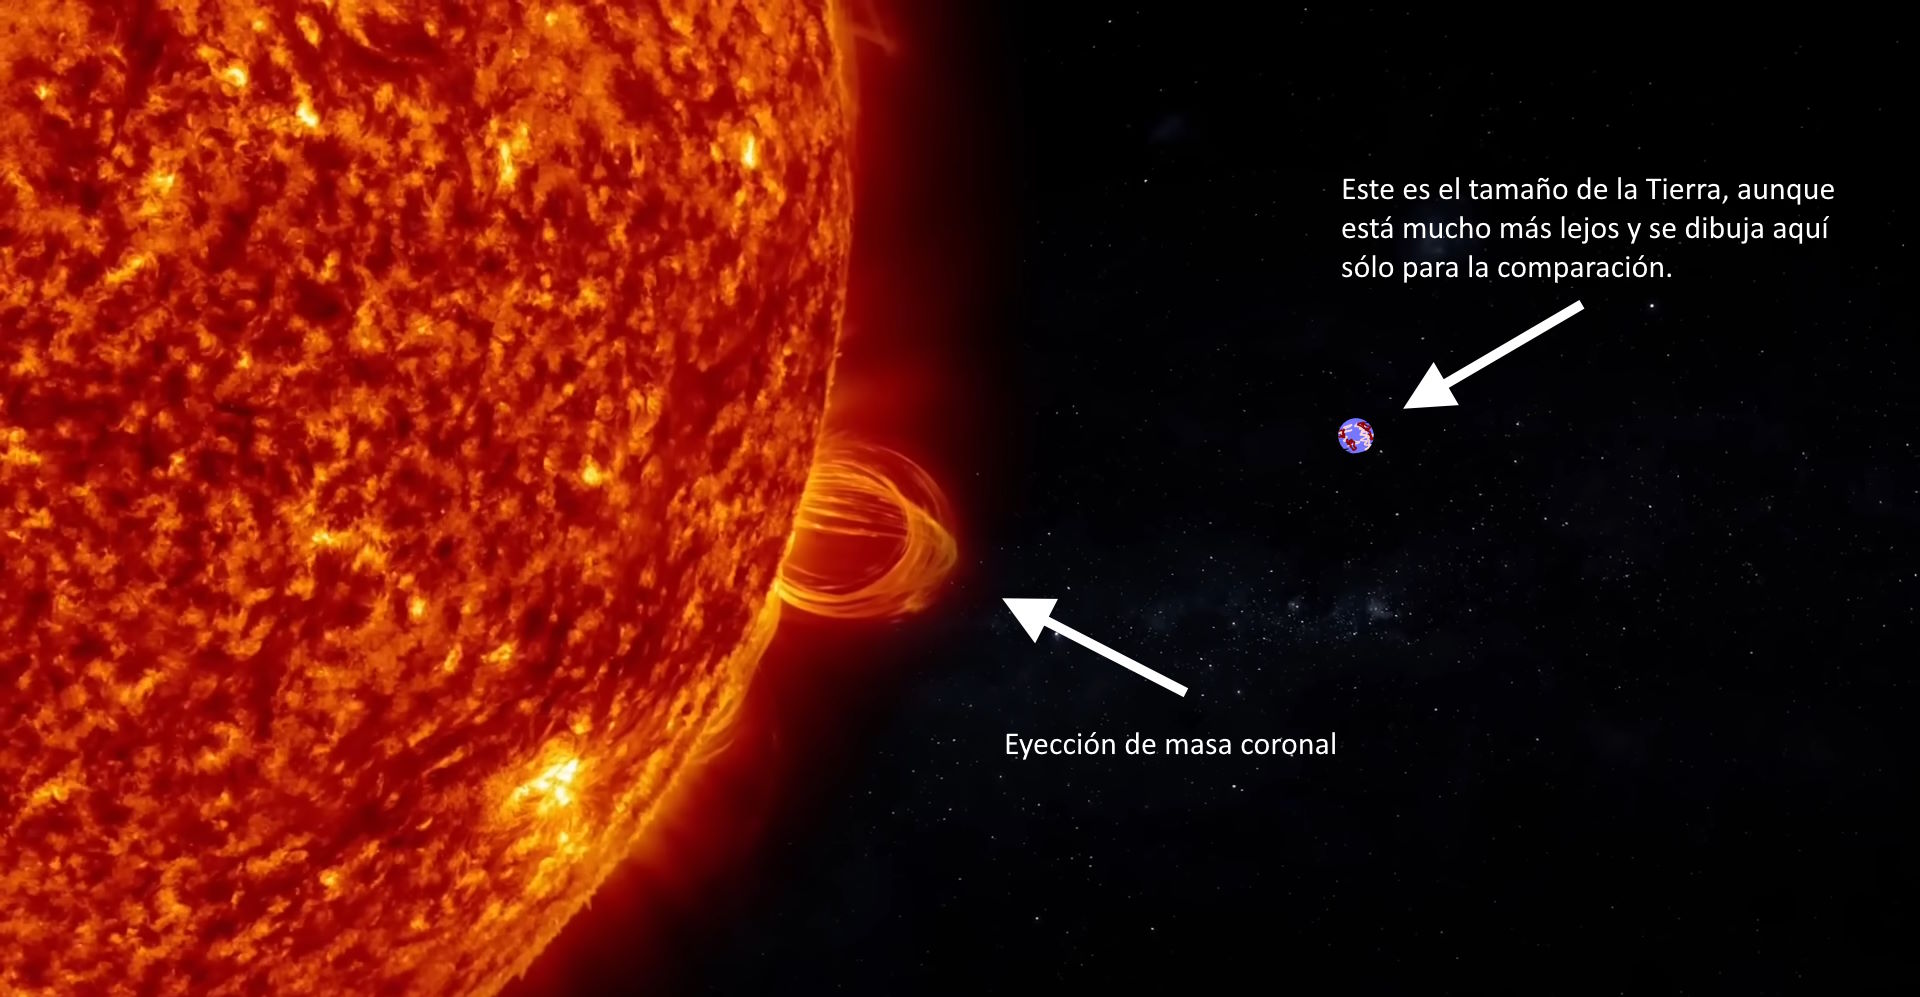 Enorme llamarada solar que provoca una eyección de masa coronal hacia el Sistema Solar